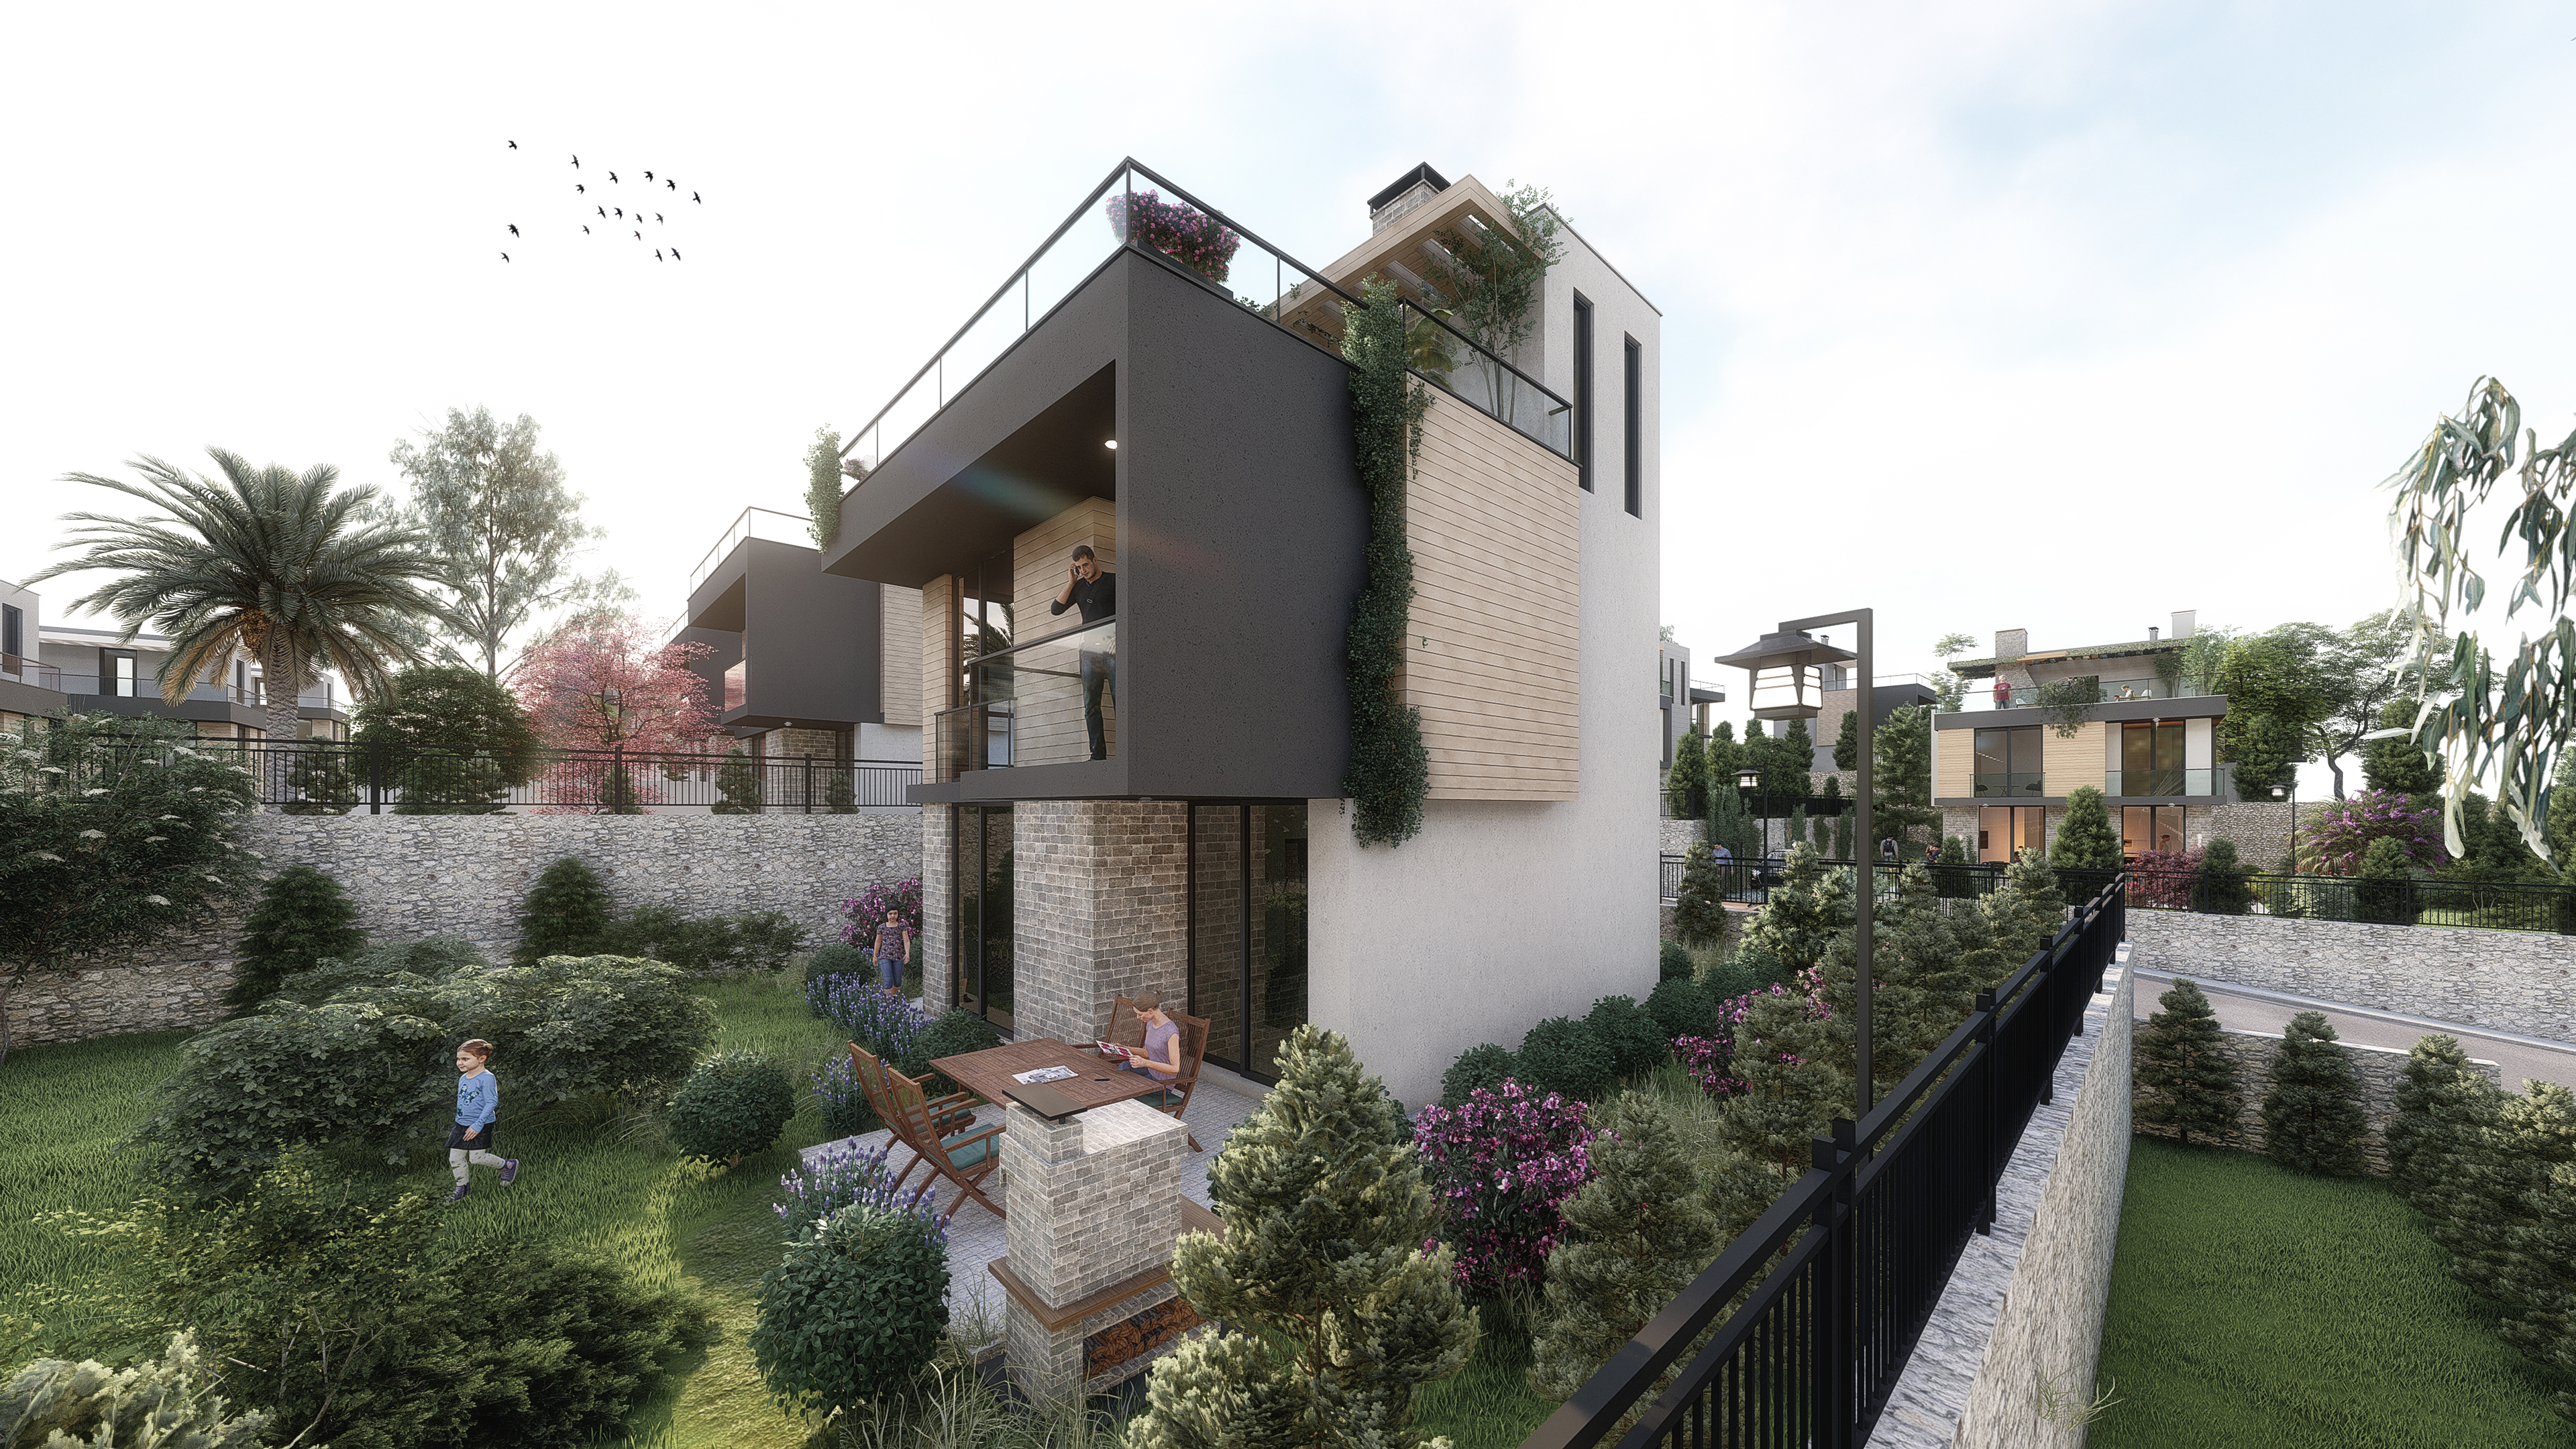 3-Bedroom Villas in Izmir Slide Image 3